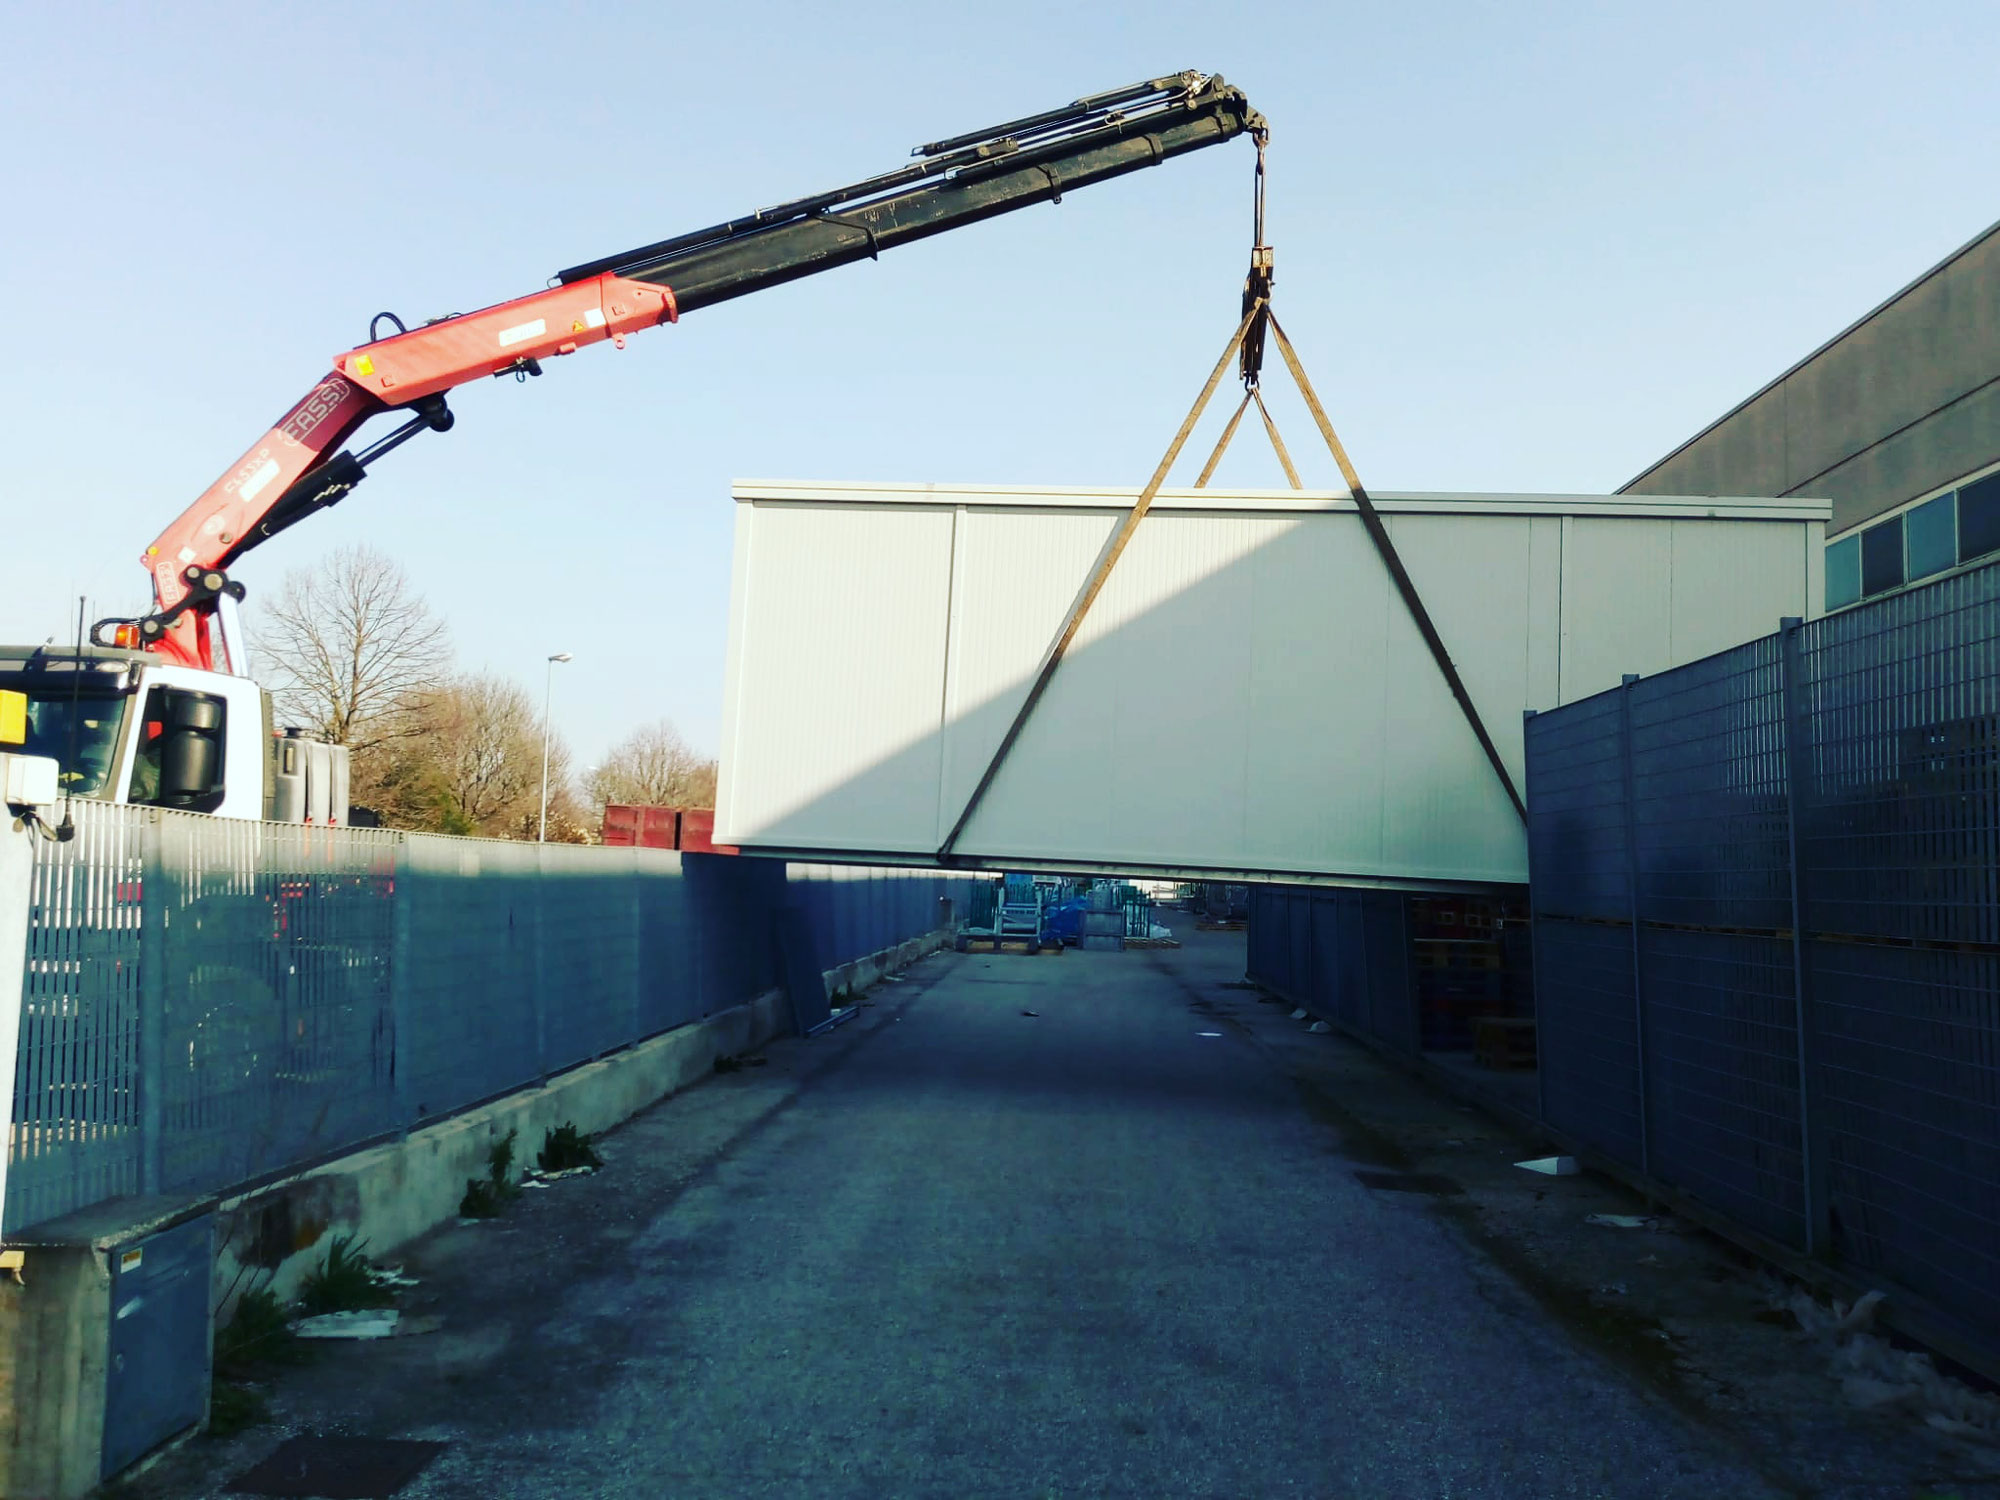 Rimini gru noleggio camion gru per scarico e posizionamento container San Giovanni in Marignano